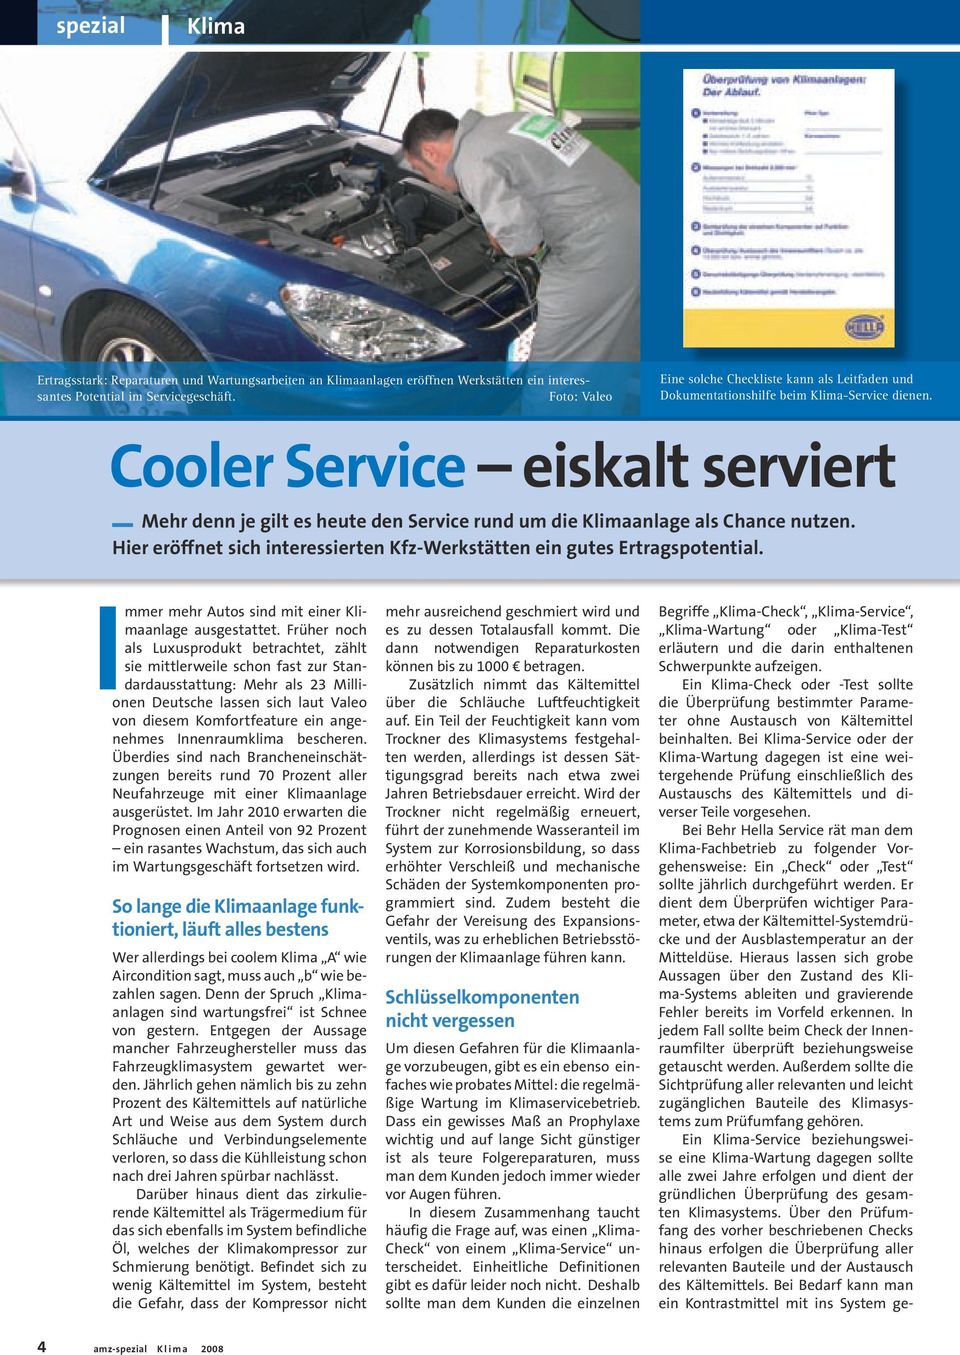 Cooler Service eiskalt serviert _ Mehr denn je gilt es heute den Service rund um die Klimaanlage als Chance nutzen. Hier eröffnet sich interessierten Kfz-Werkstätten ein gutes Ertragspotential.